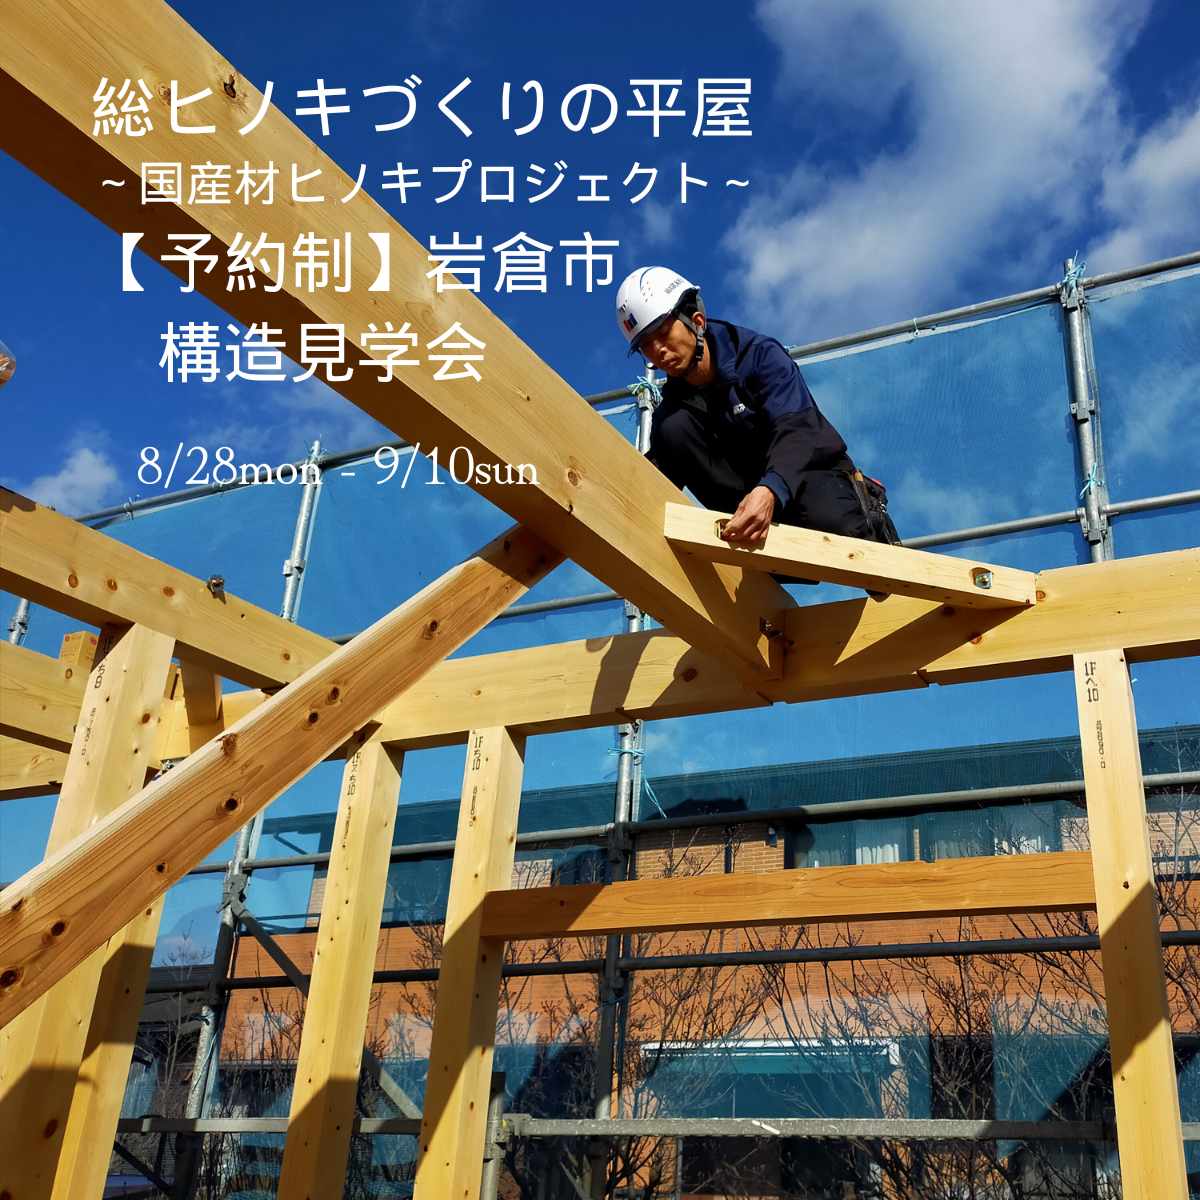 【期間延長】飛騨の匠とつくる総ヒノキの平家🍃構造見学会